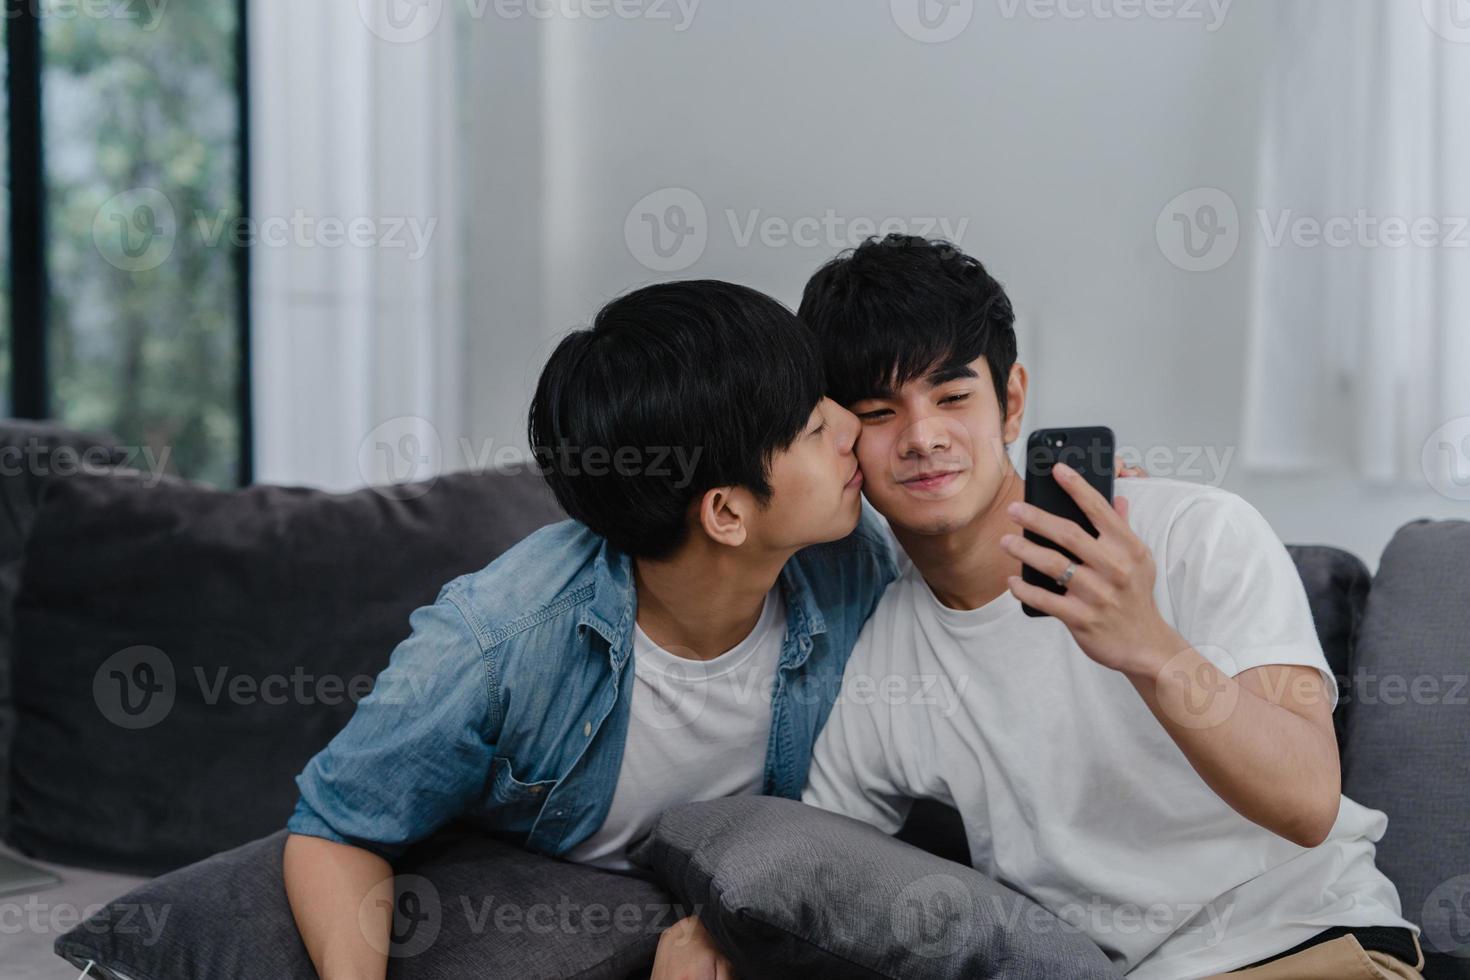 asiatischer Influencer schwules Paar Vlog zu Hause. asiatische lgbtq-männer glücklich entspannen spaß mit technologie handy aufnehmen lifestyle-vlog-video-upload in sozialen medien beim liegesofa im wohnzimmerkonzept. foto